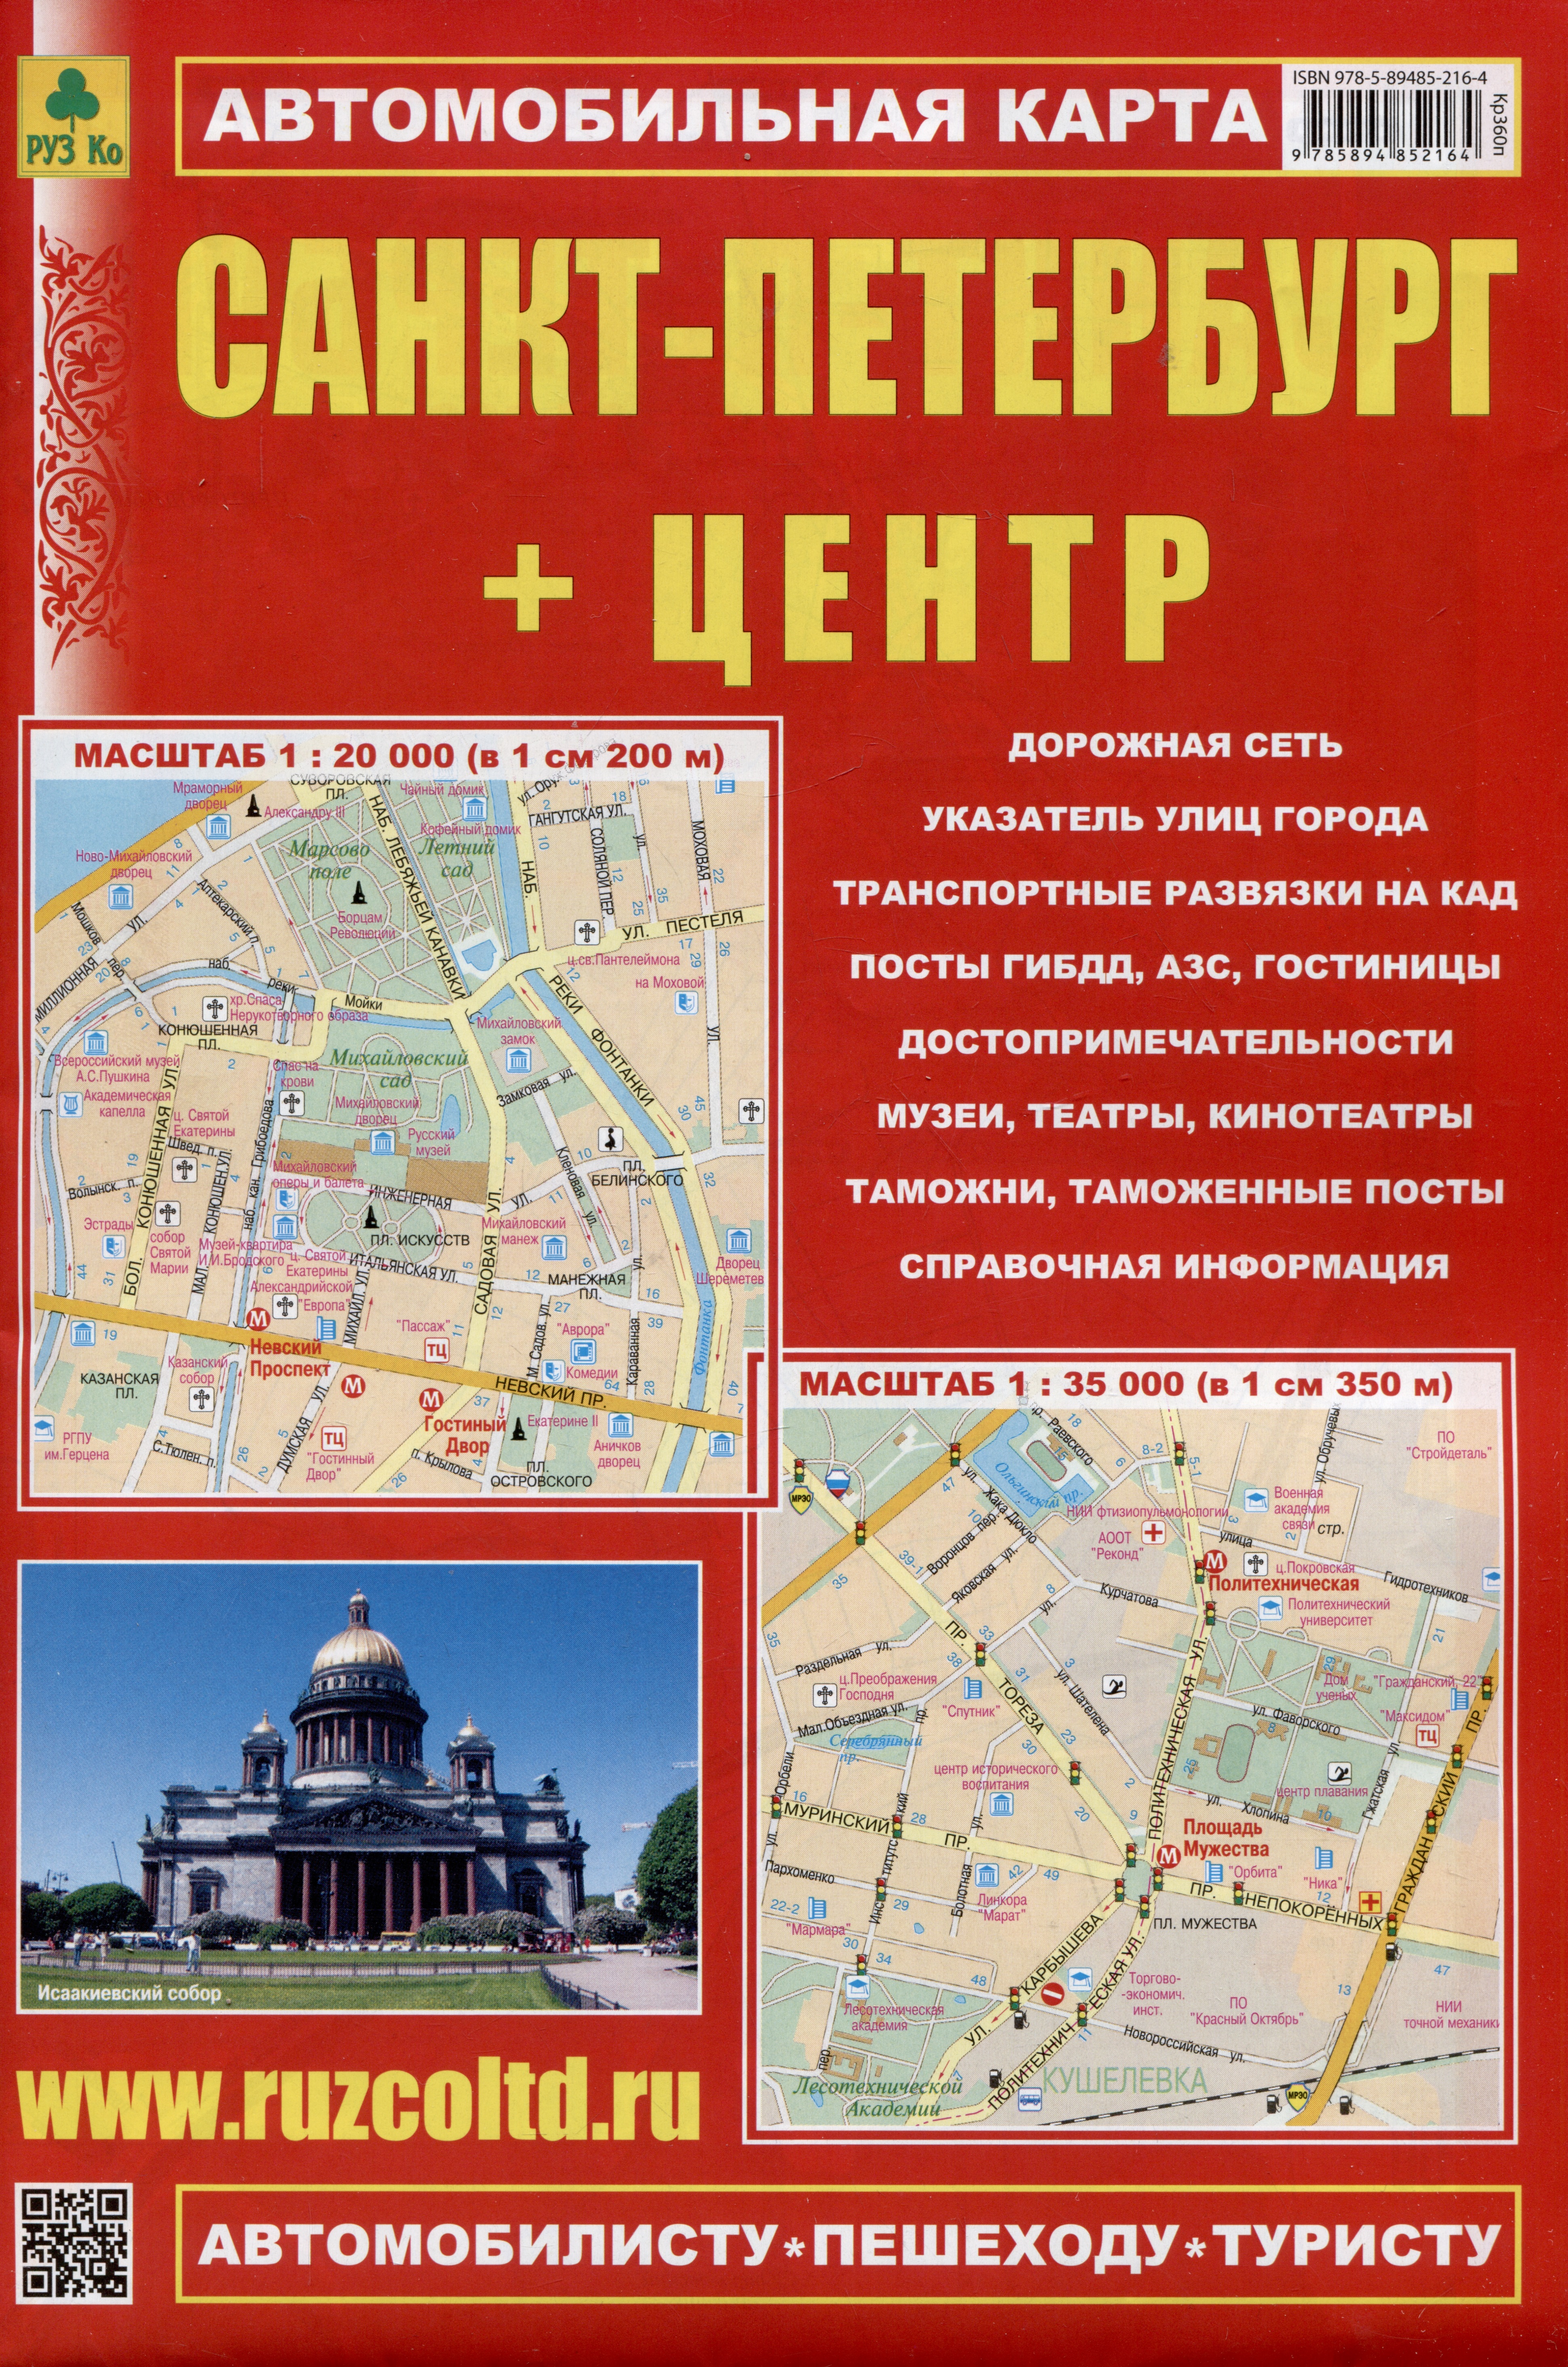 Санкт-Петербург + Центр. Автомобильная карта. Карта города (1:35 000), карта центра (1:20 000) + схема метро очень большая раскраска карта санкт петербурга